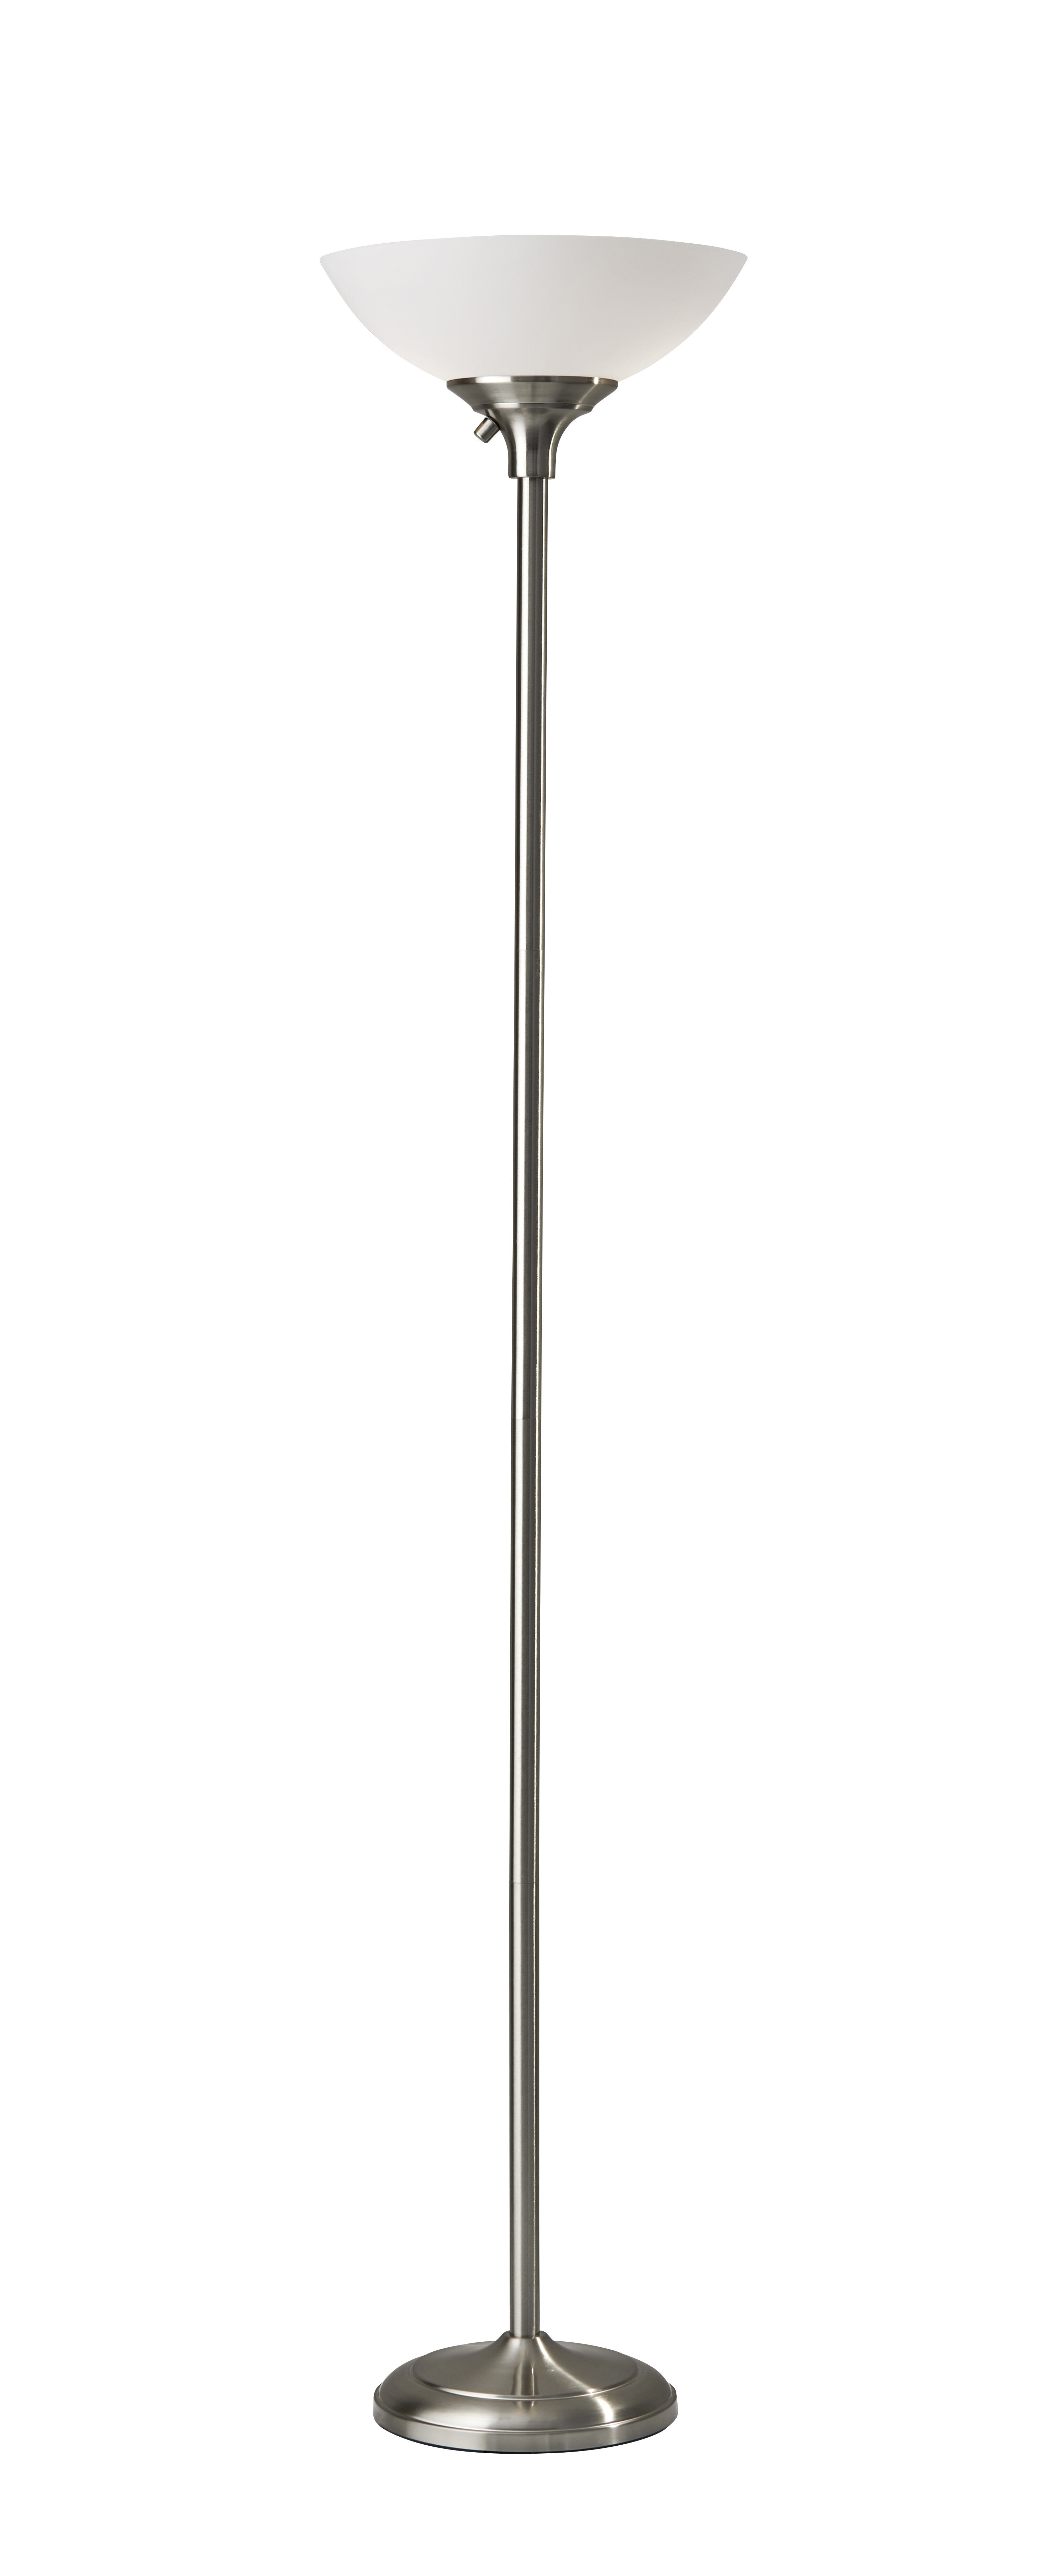 RUNNUP Adjustable Gooseneck Floor Lamp Bedside Floor Lamps Metal